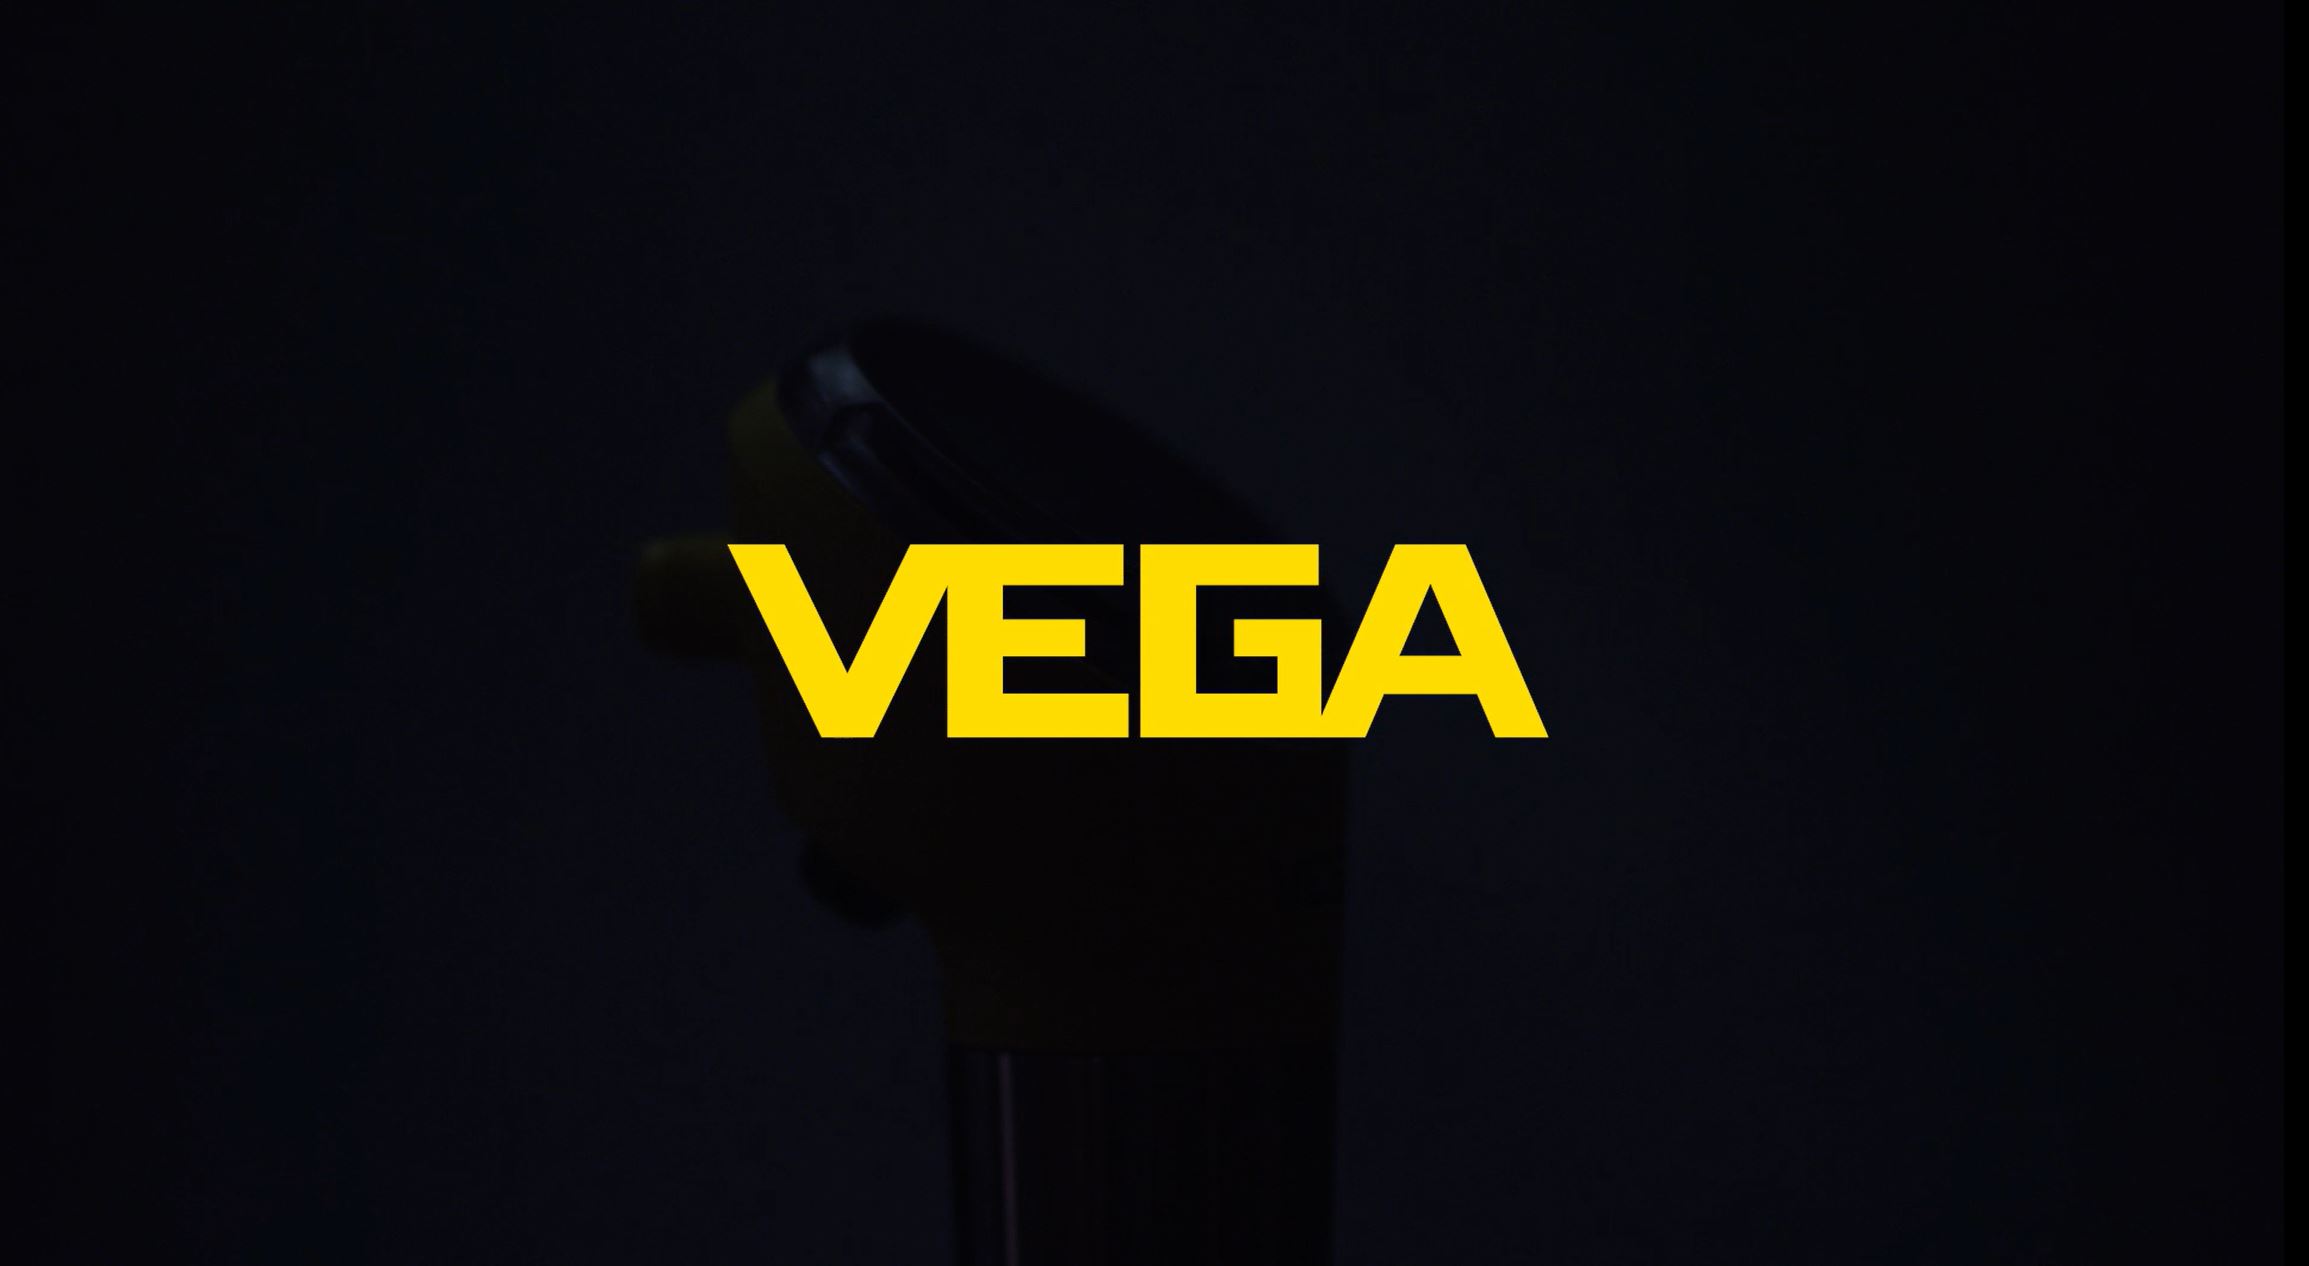 全新带360°彩色状态显示的VEGA限位和压力仪表问世!